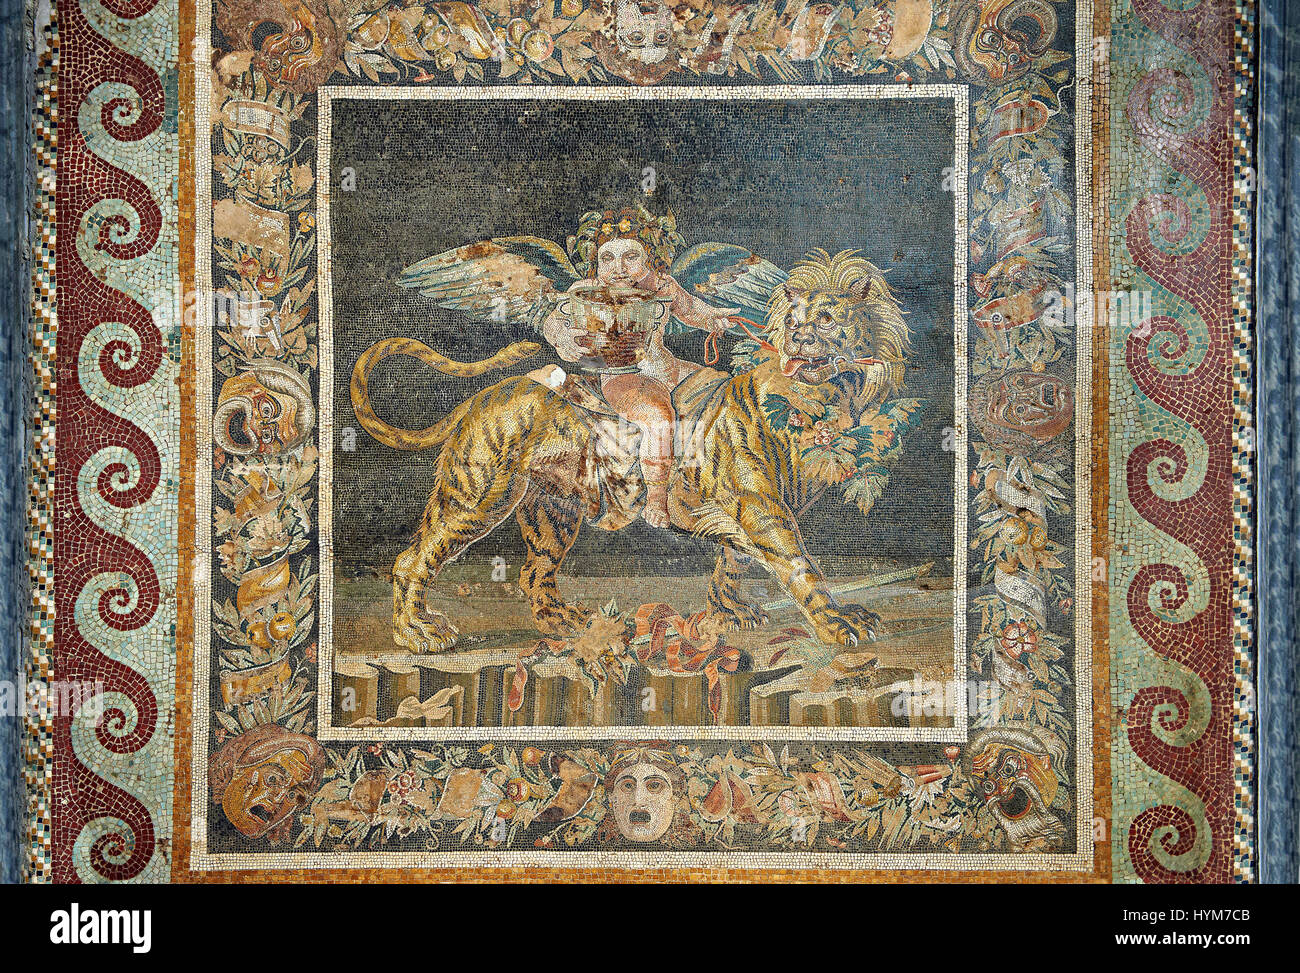 Mosaïque romaine d'une procession mythique, Pompéi, Naples, Italie Musum archéologique Banque D'Images